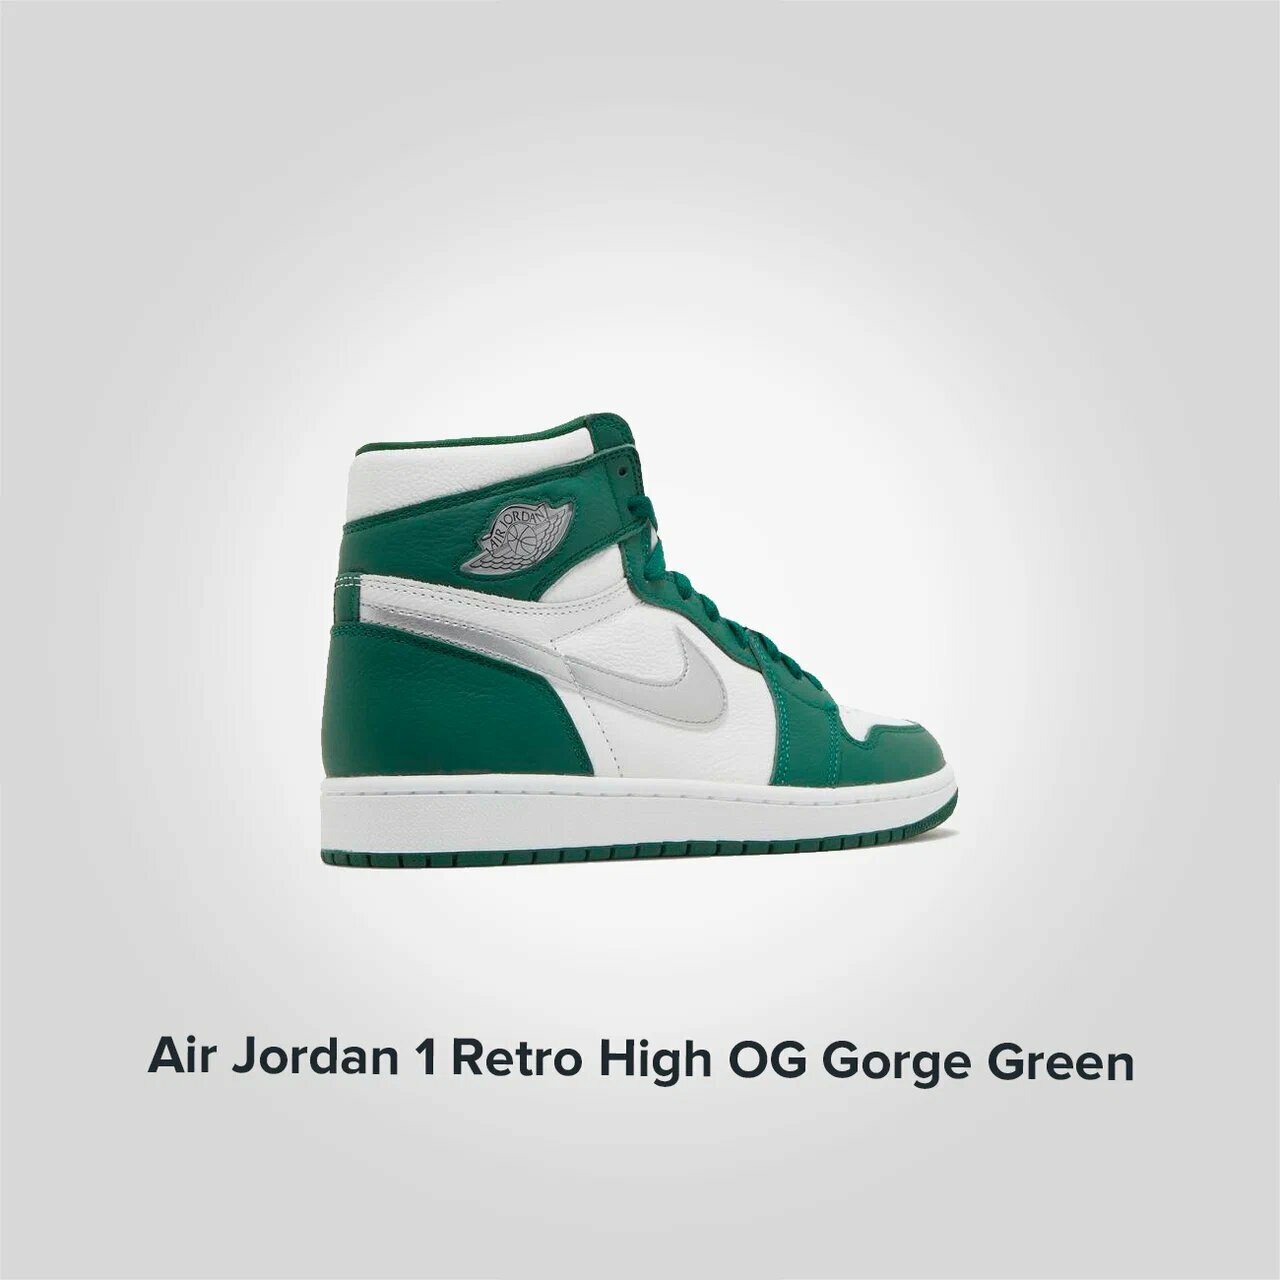 Jordan 1 Retro High OG Gorge Green